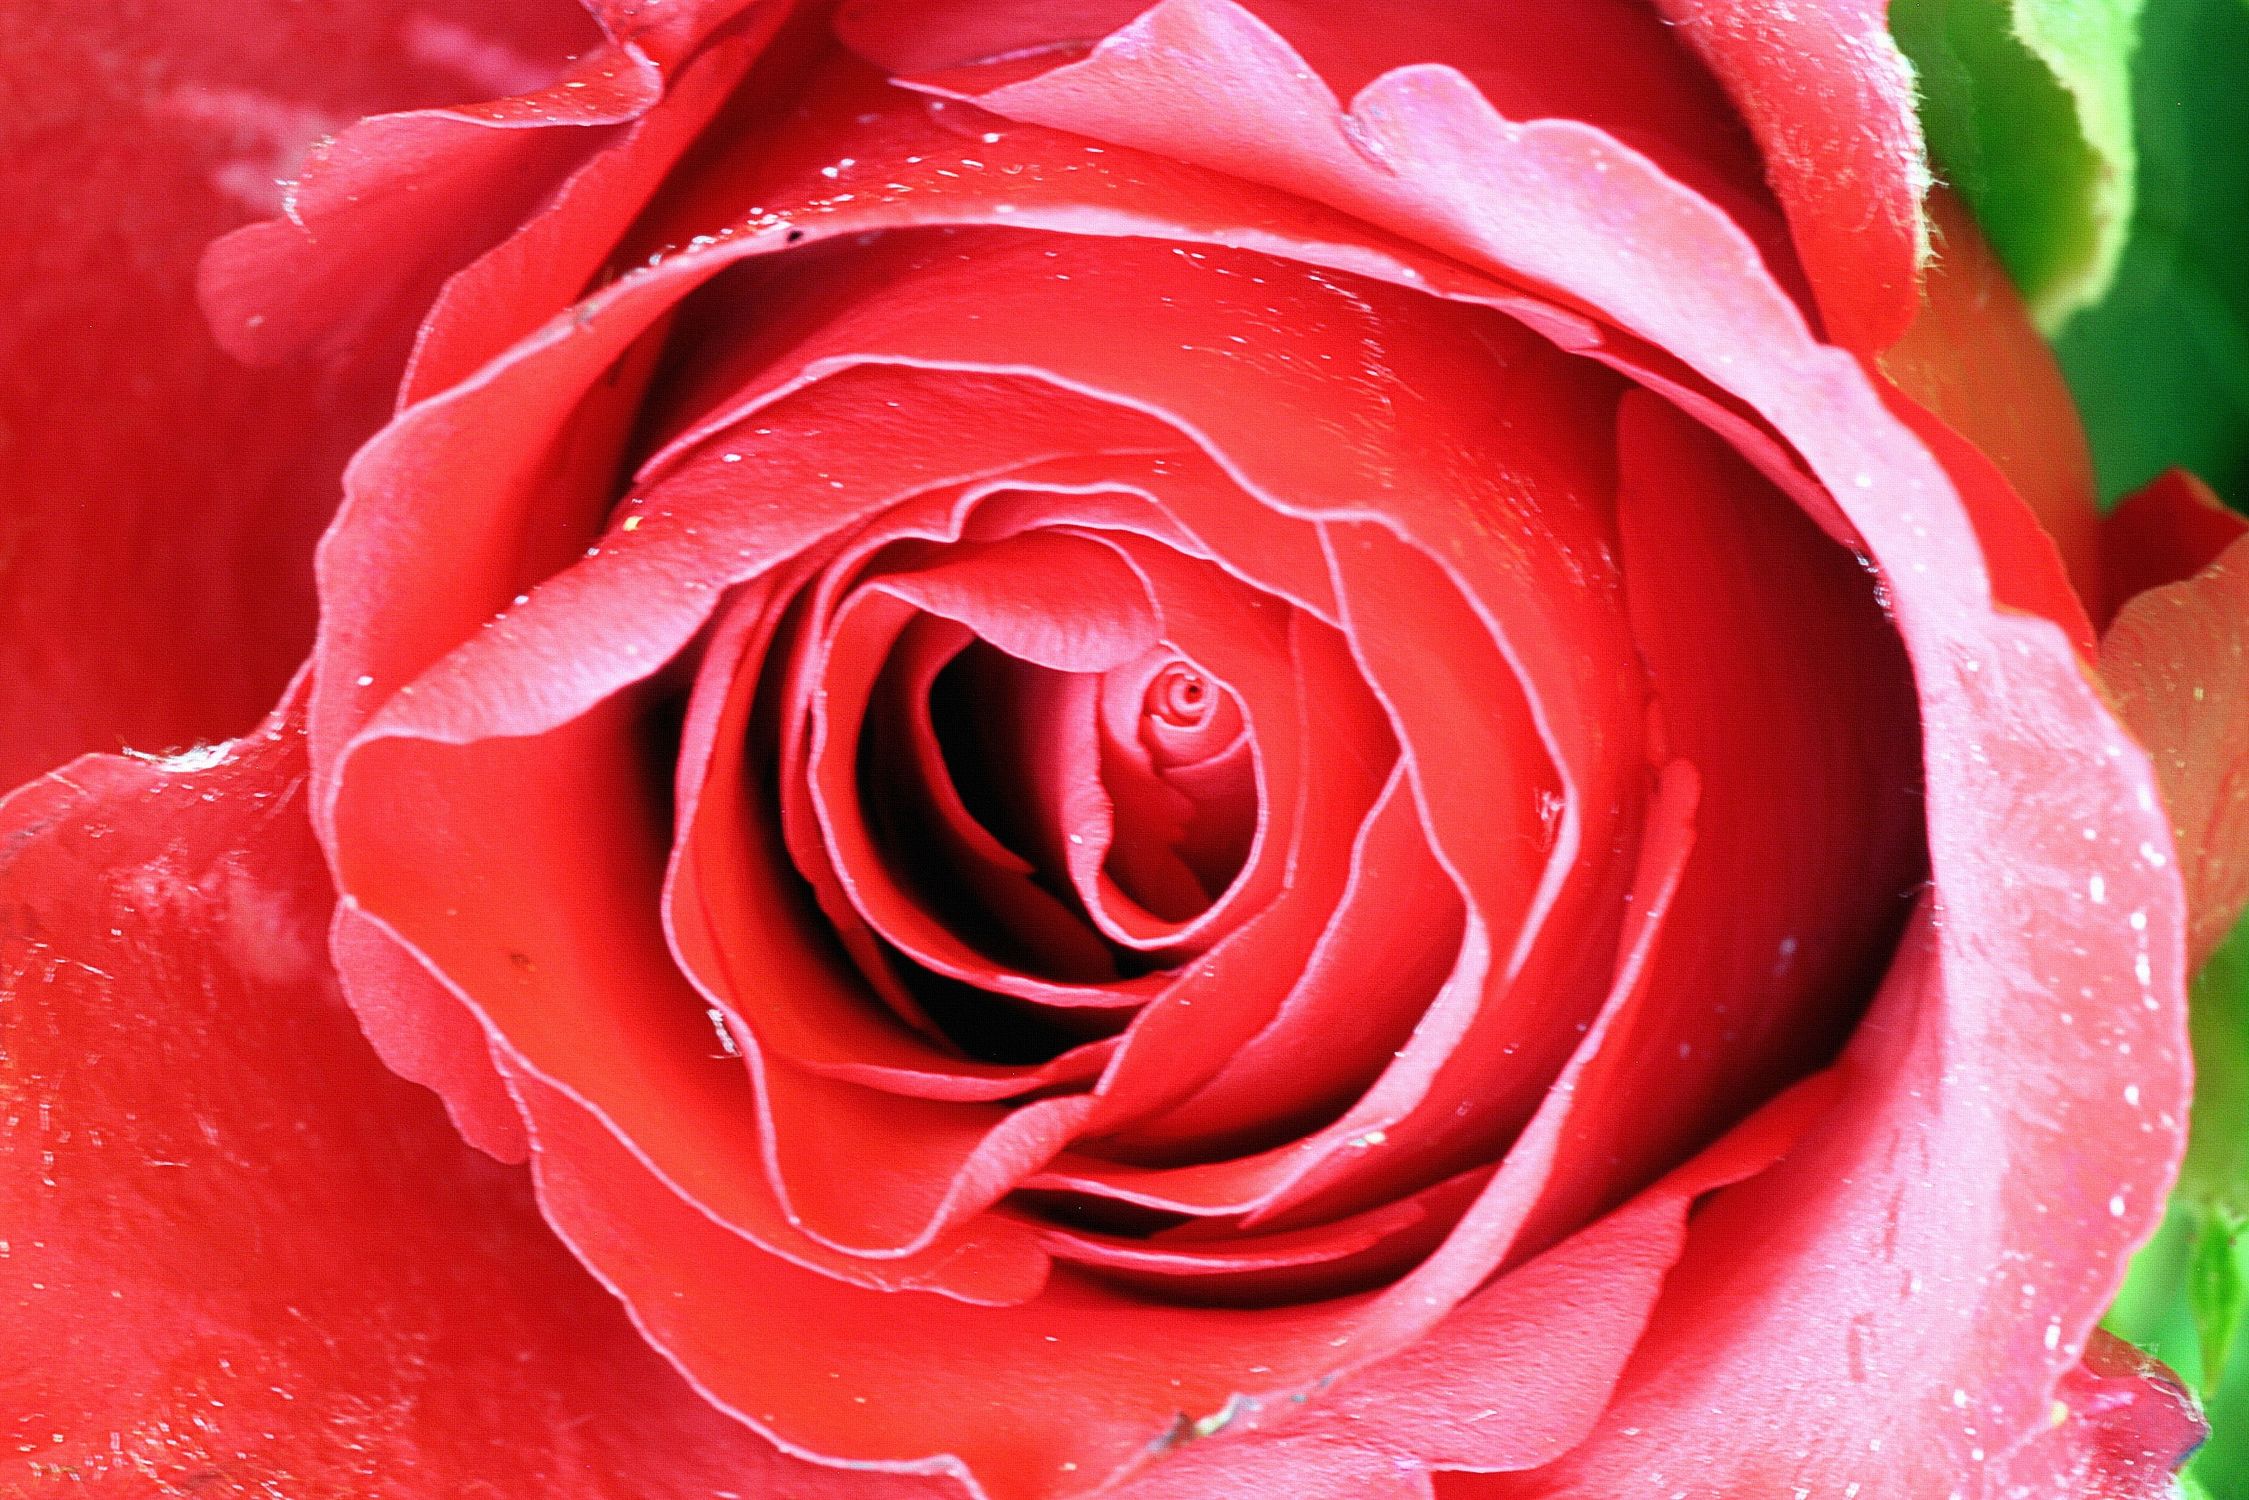 Bild mit Farben, Gegenstände, Natur, Pflanzen, Blumen, Rosa, Rot, Rosen, Kamelien, Makrofotografie, Rose, Roses, Makro Rose, rote Rose, Rosenblüte, Rosengewächse